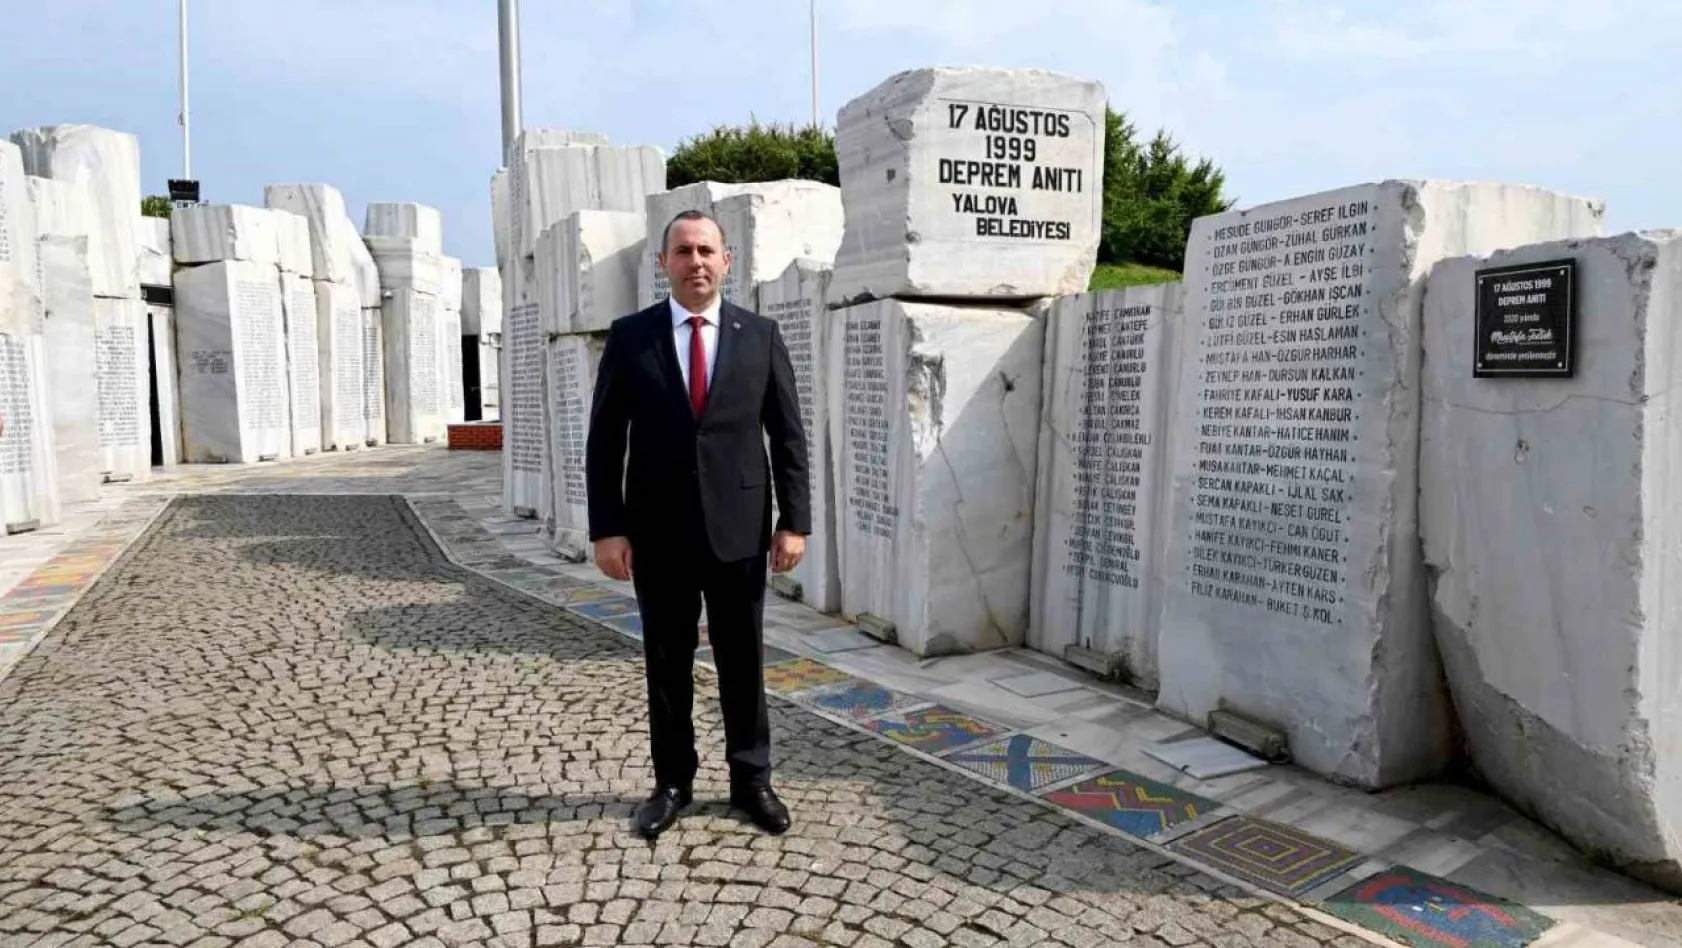 Başkan Tutuk'tan 17 Ağustos depreminin yıl dönümünde kentsel dönüşüm çağrısı